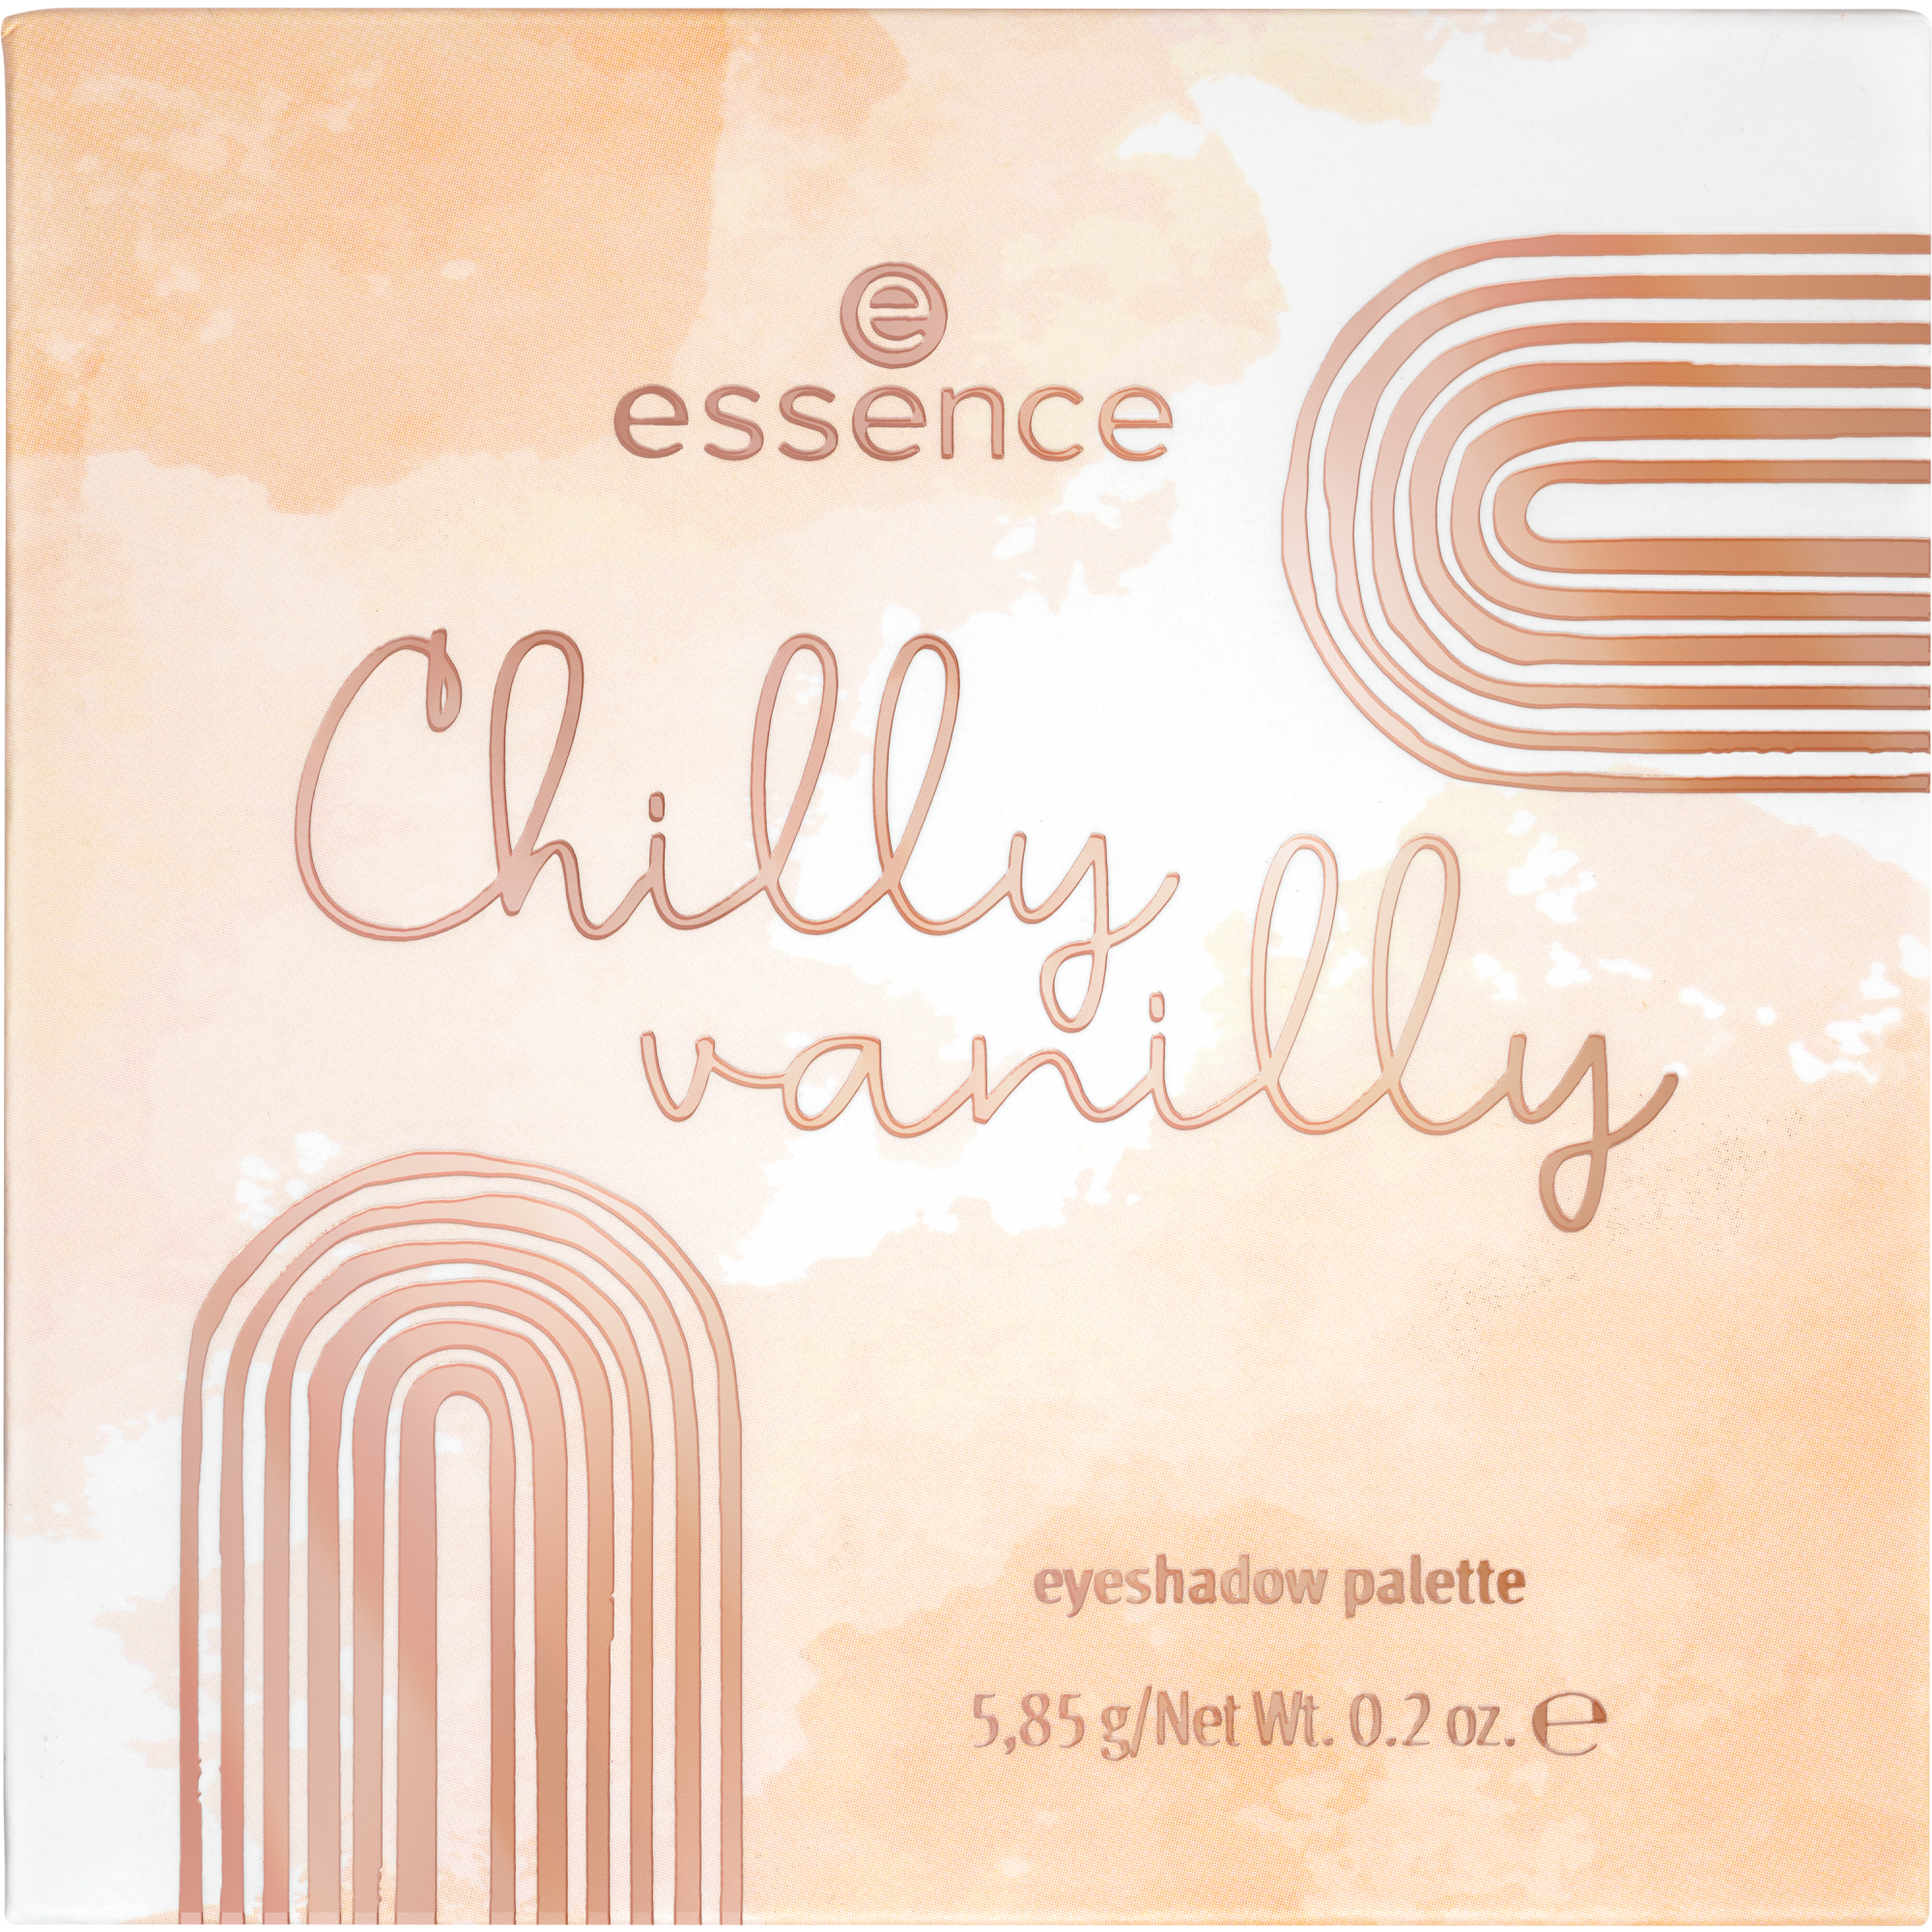 Buy essence Chilly vanilly eyeshadow palette Favorite Flavor: Vanilla.  online